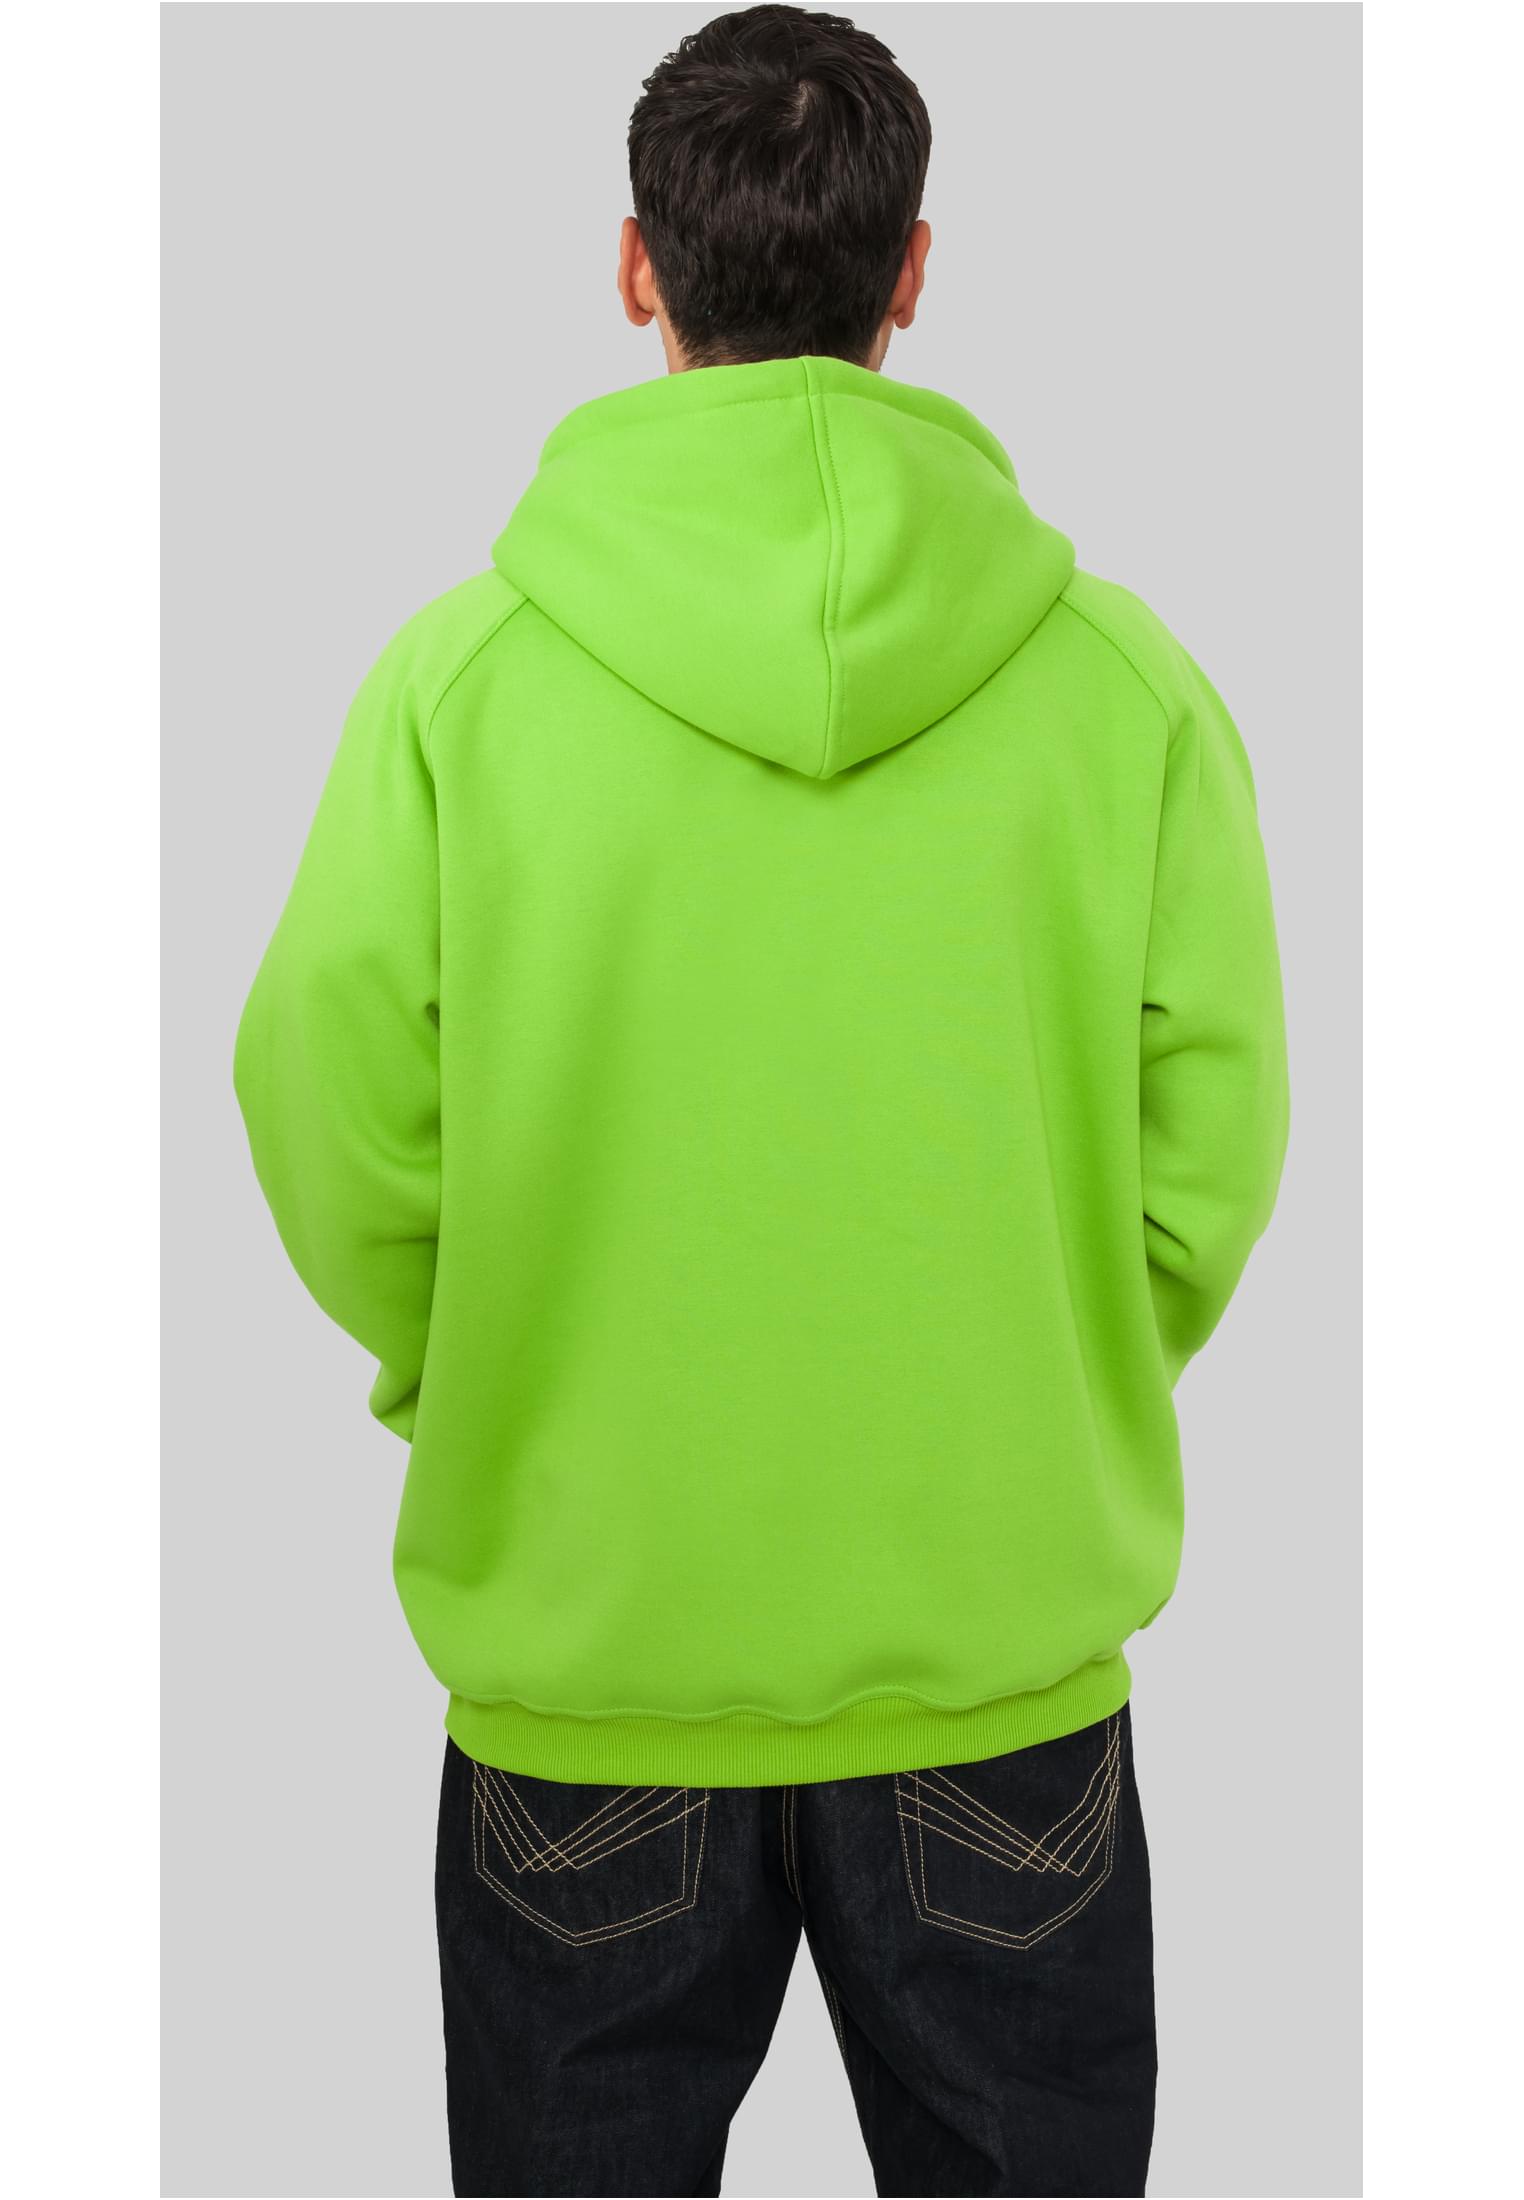 Zip-Hoodies Zip Hoody in Farbe limegreen